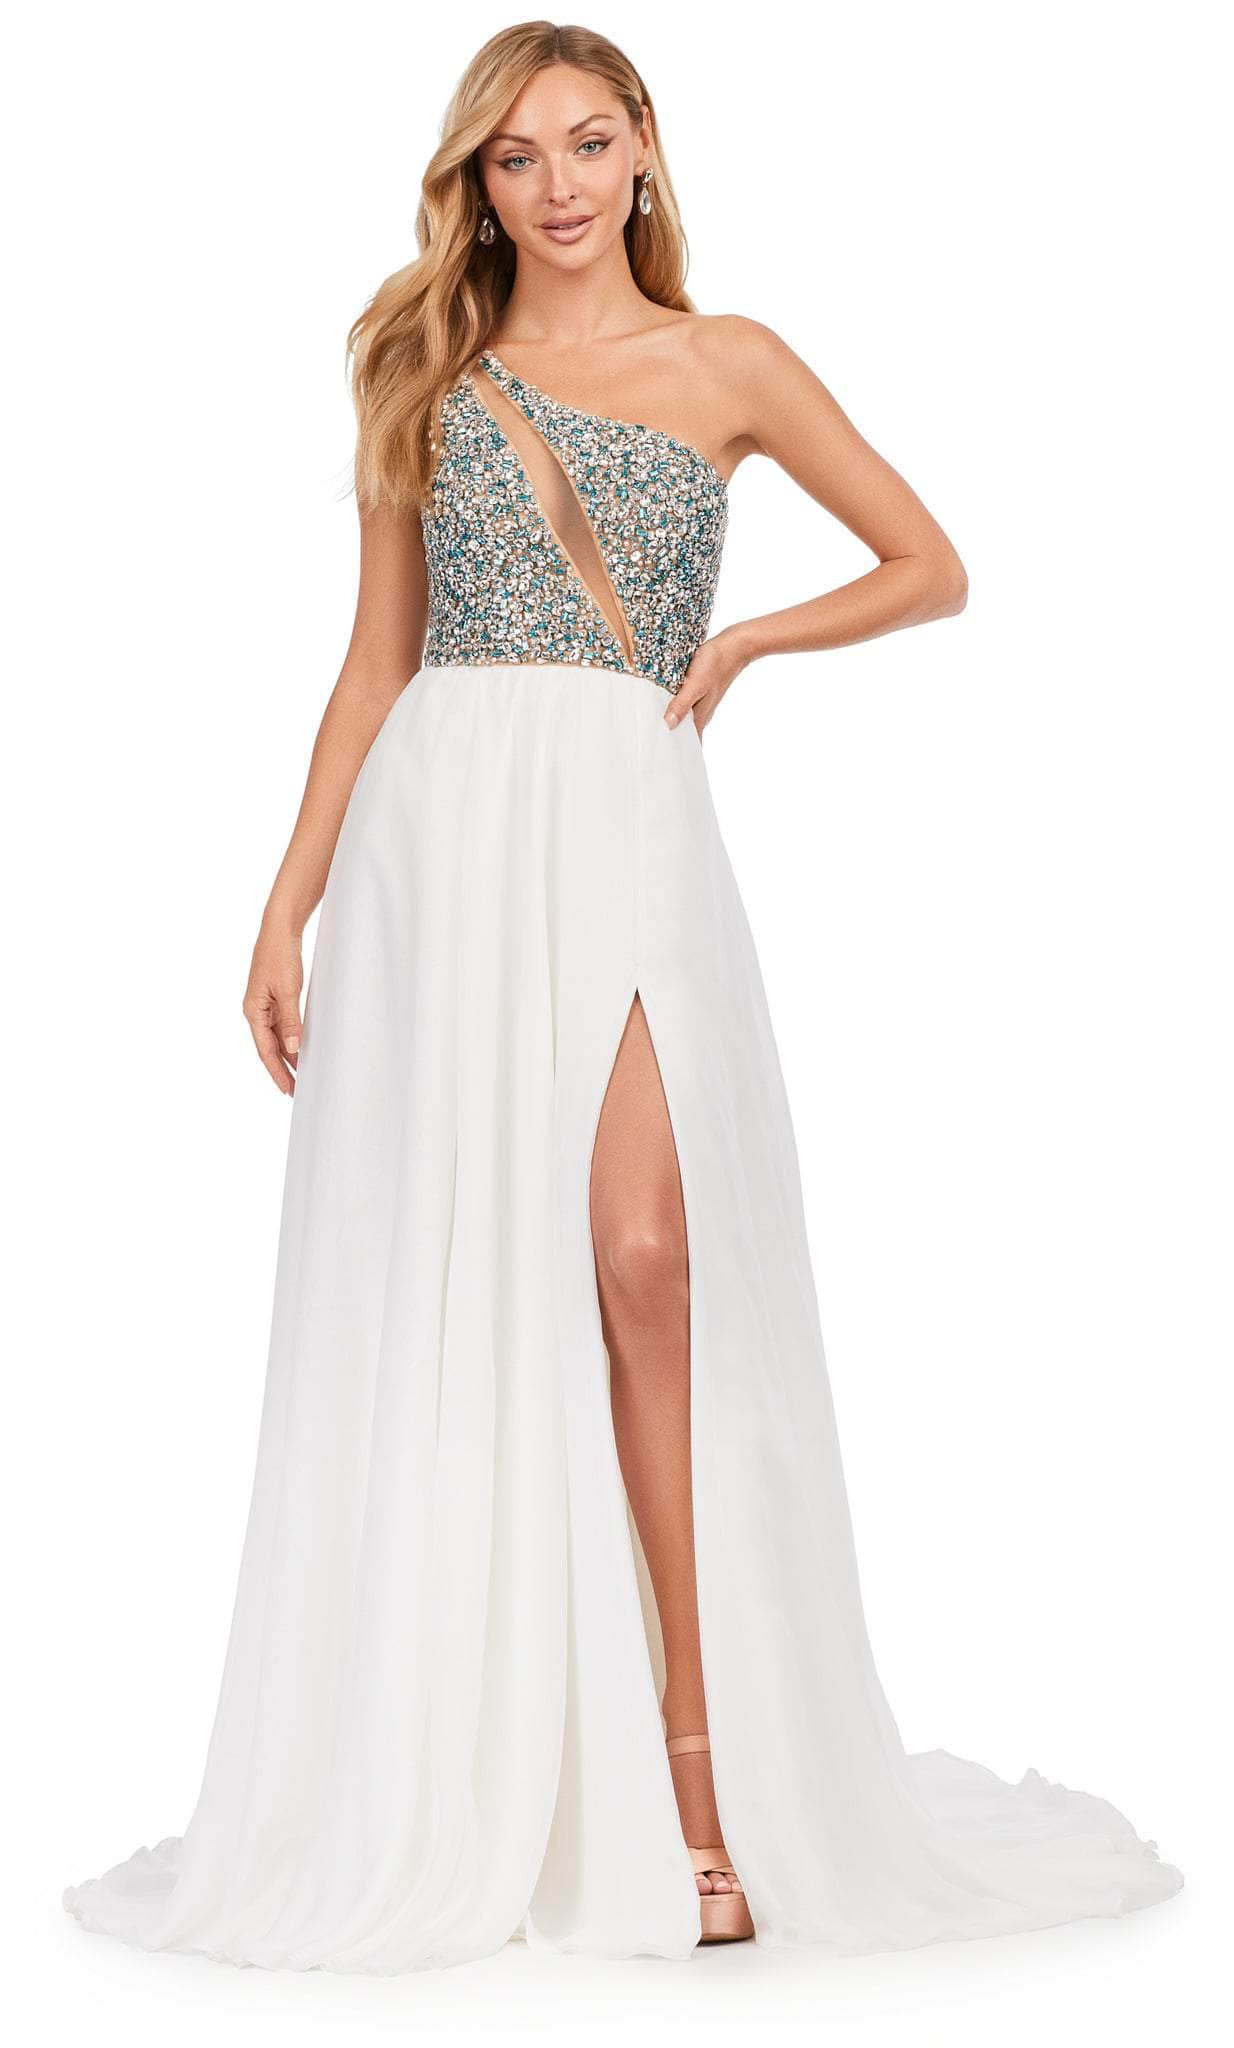 Ashley Lauren 11245 - Asymmetrical Neck A-line Gown
